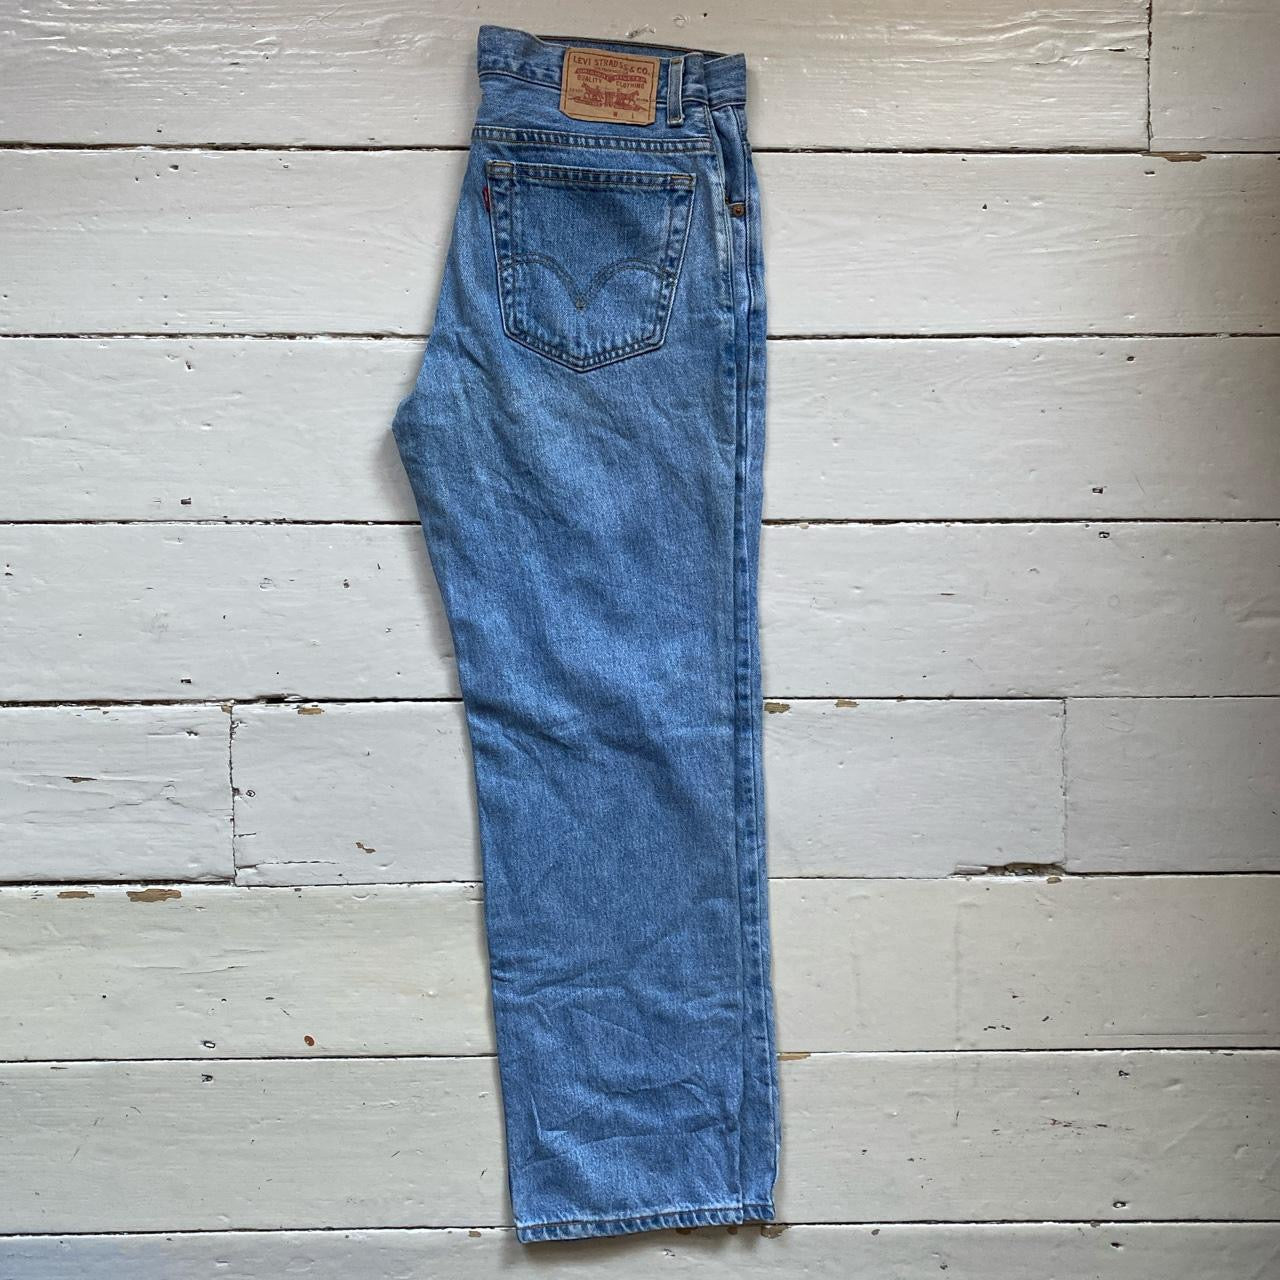 Levis 516 Light Blue Jeans (33/30)